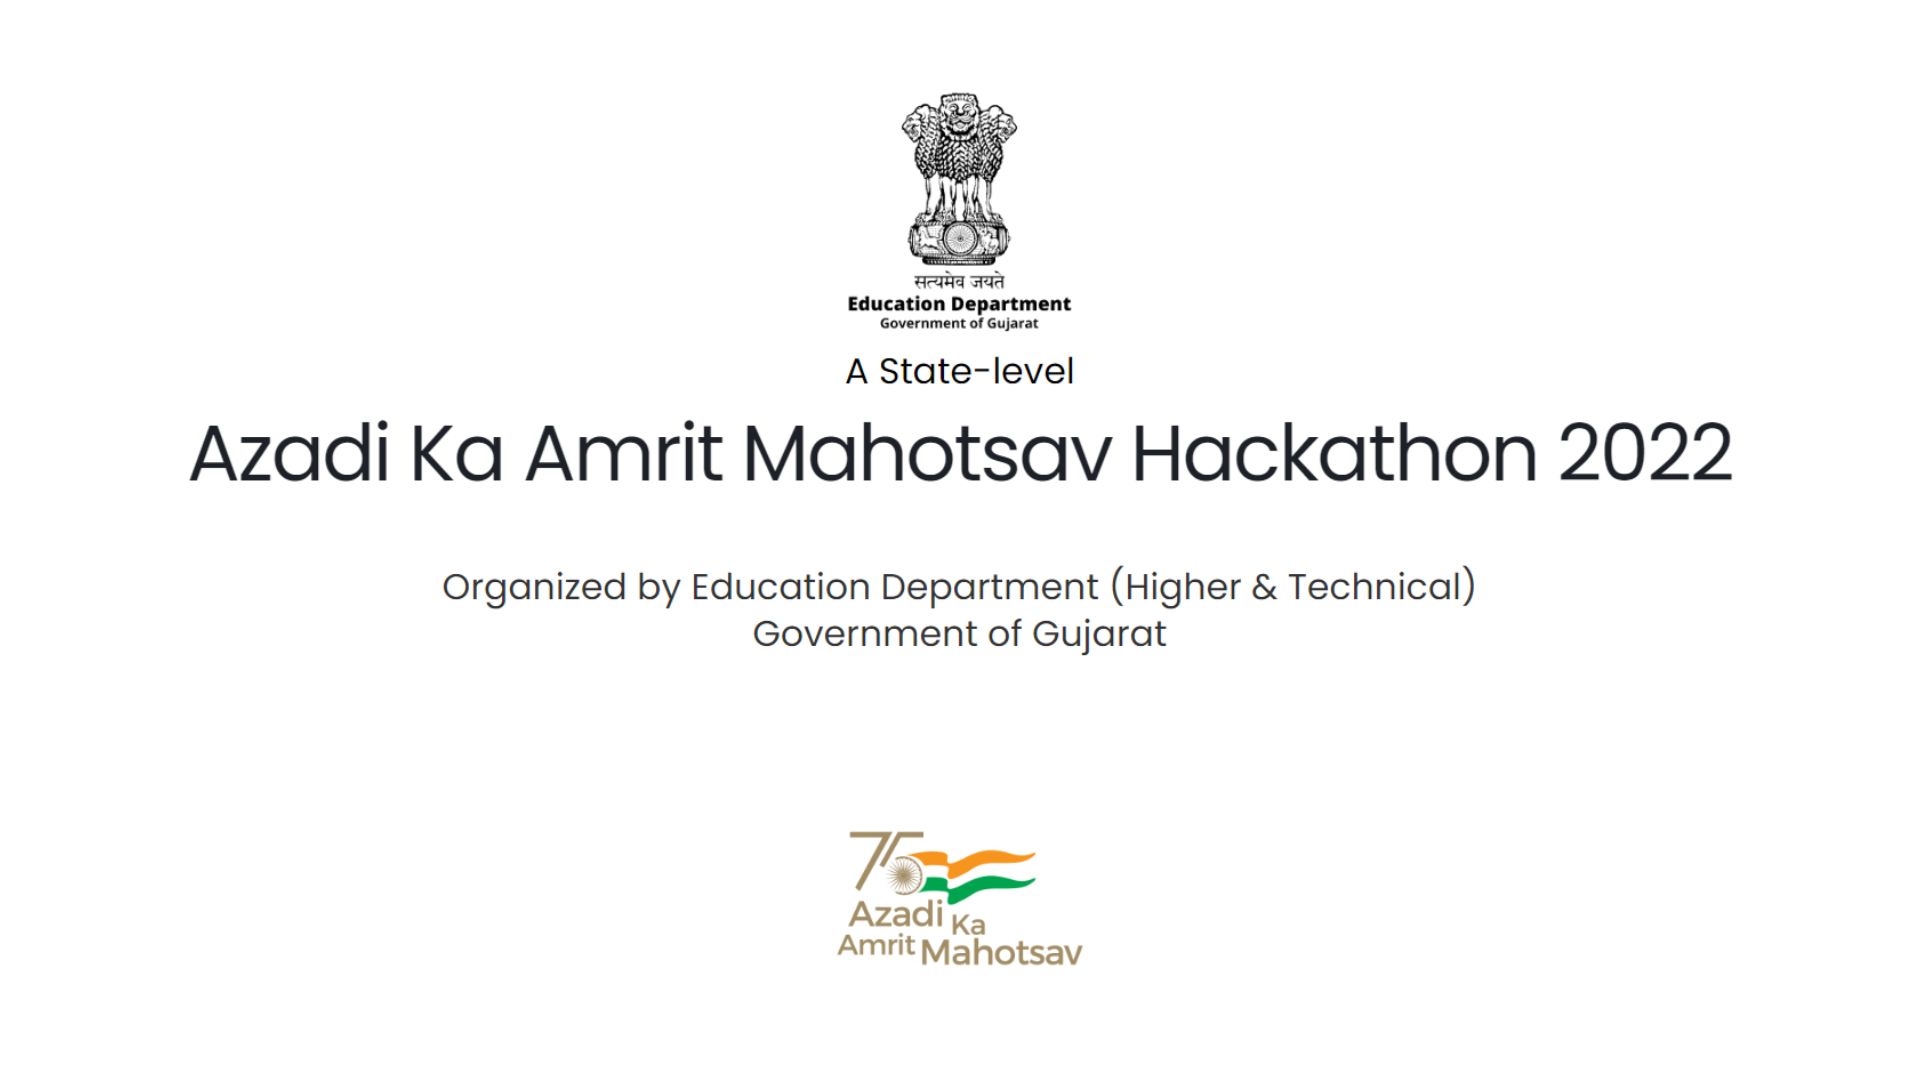 Azadi Ka Amrit Mahotsav Hackathon 2022